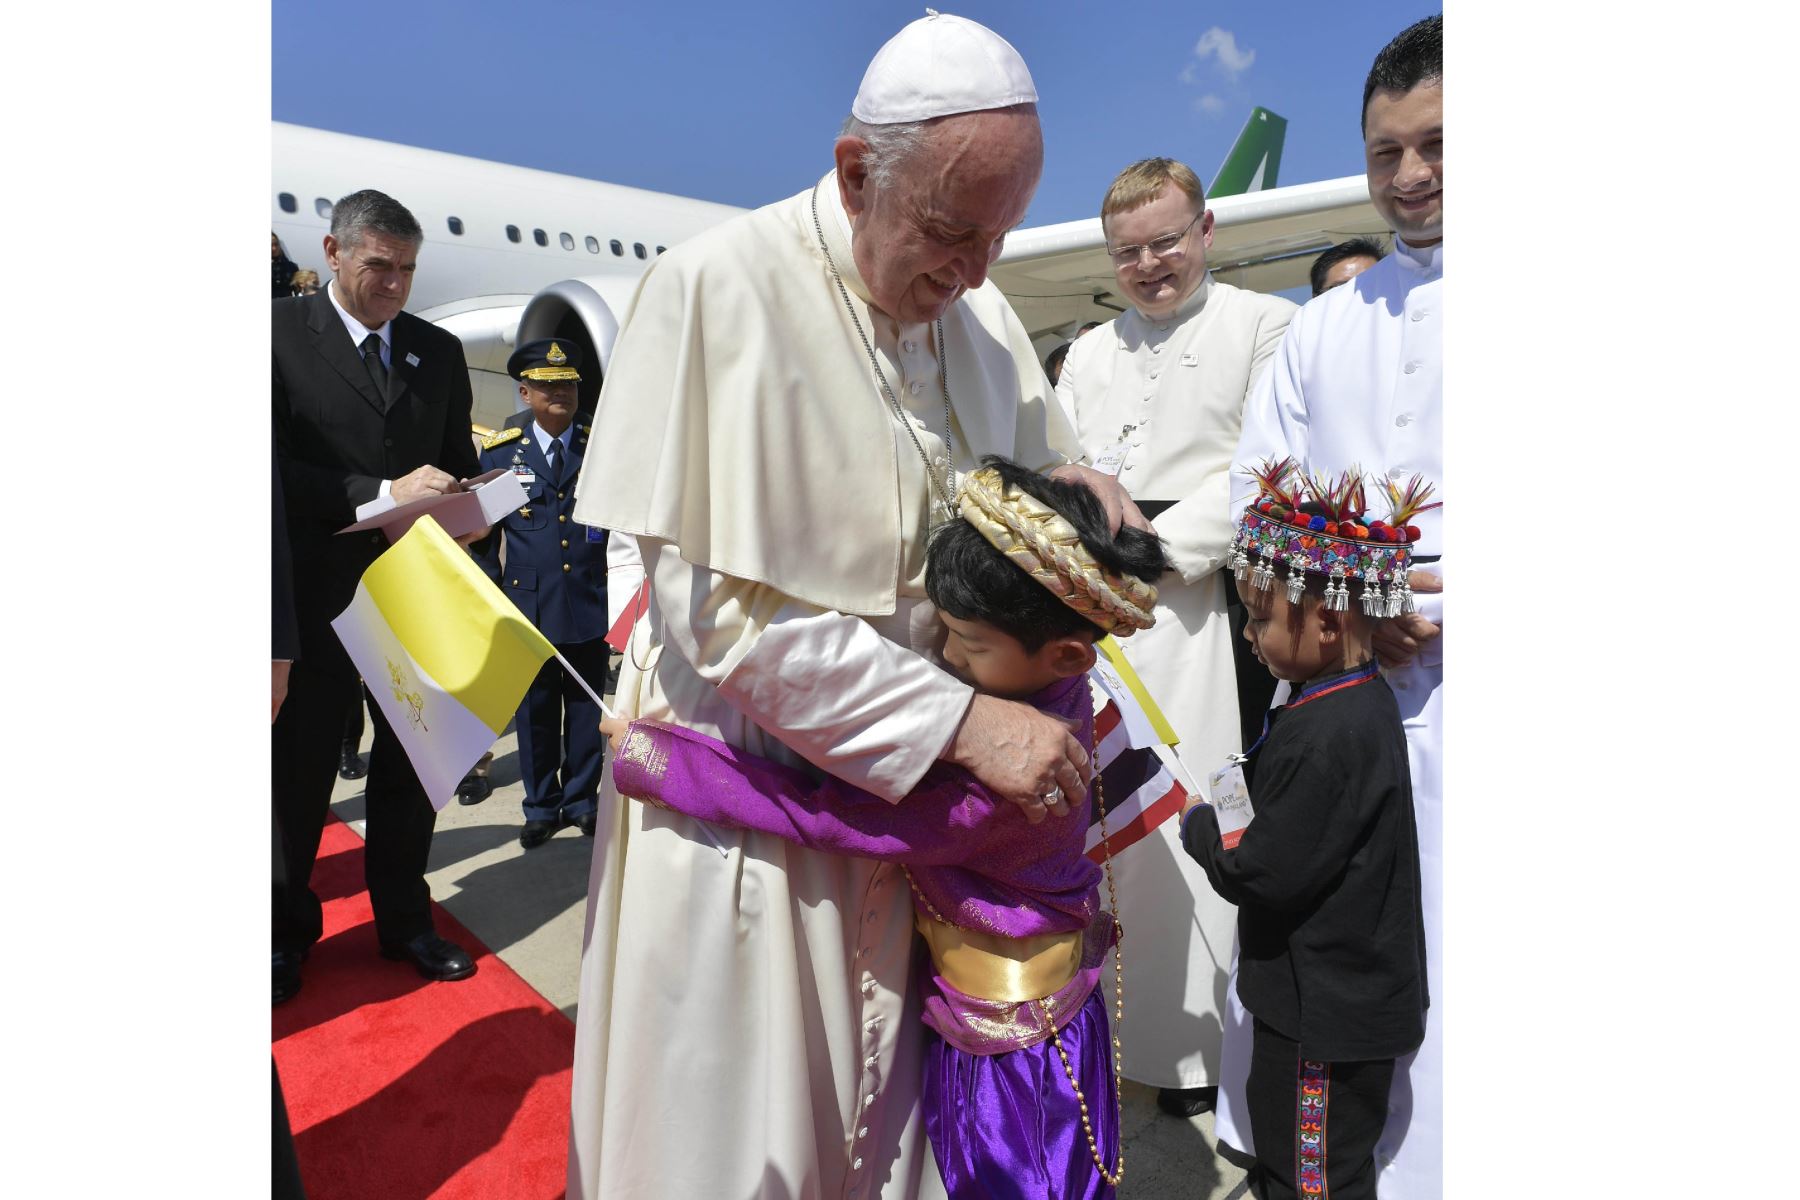 El Papa Francisco llegó a Tailandia, la primera etapa de una gira asiática que se extenderá por Japón y llevará un mensaje de diálogo y desarme nuclear. Foto: AFP